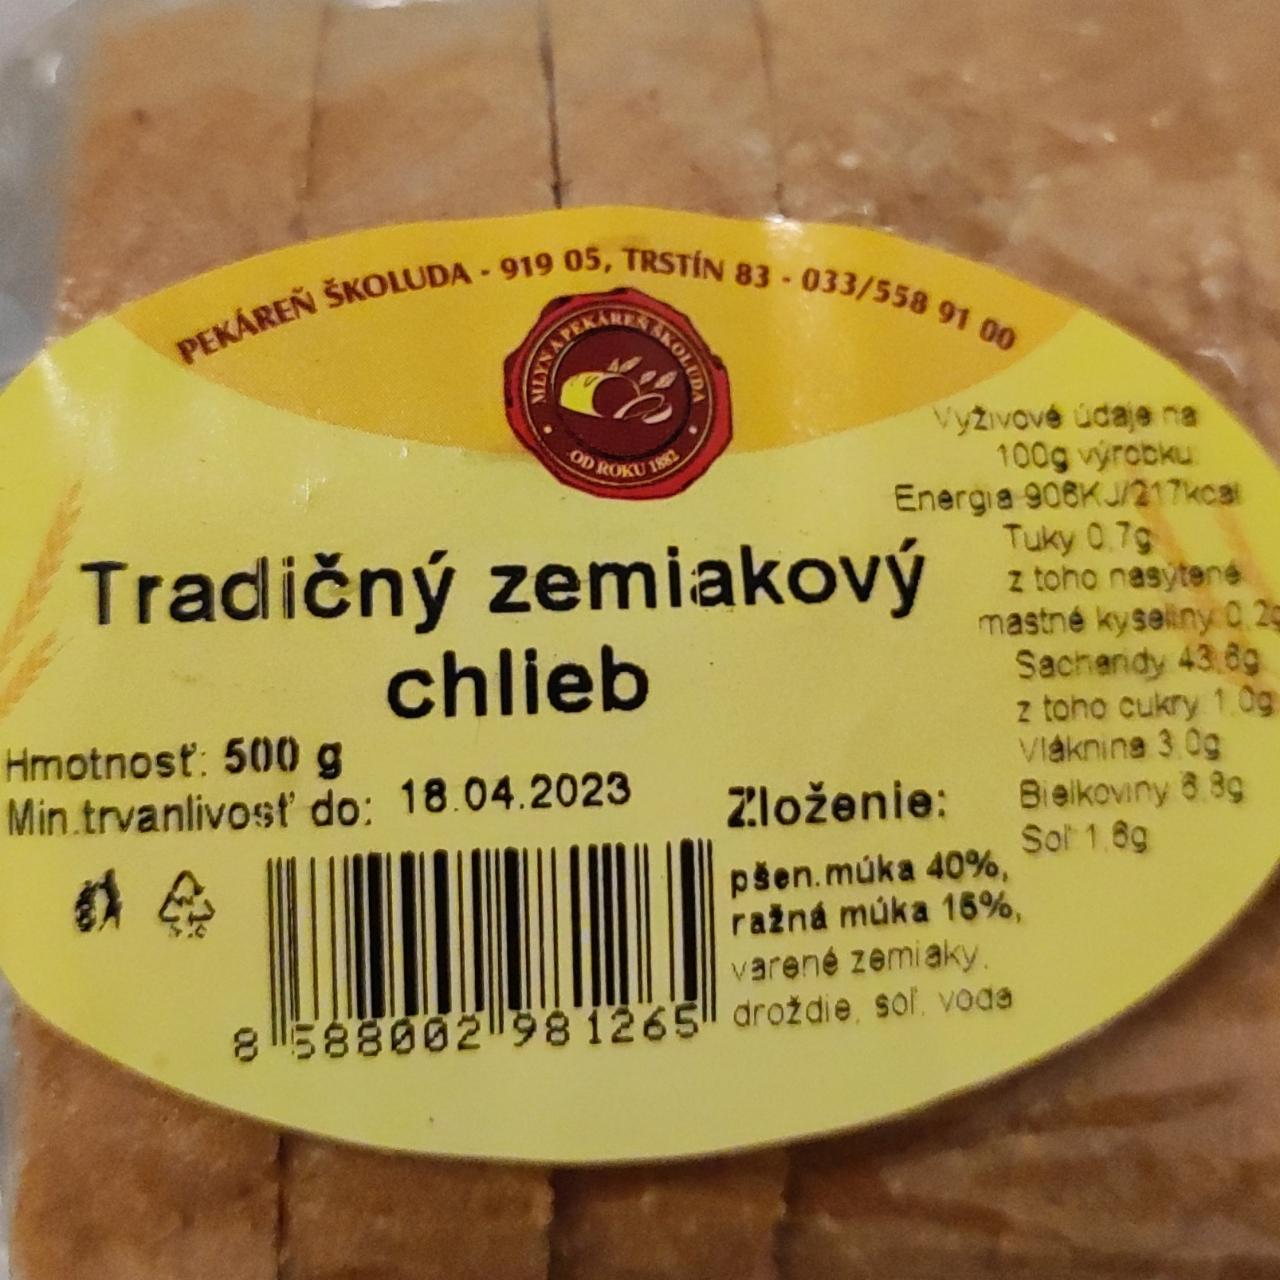 Fotografie - Tradičný zemiakový chlieb Pekáreň Školuda